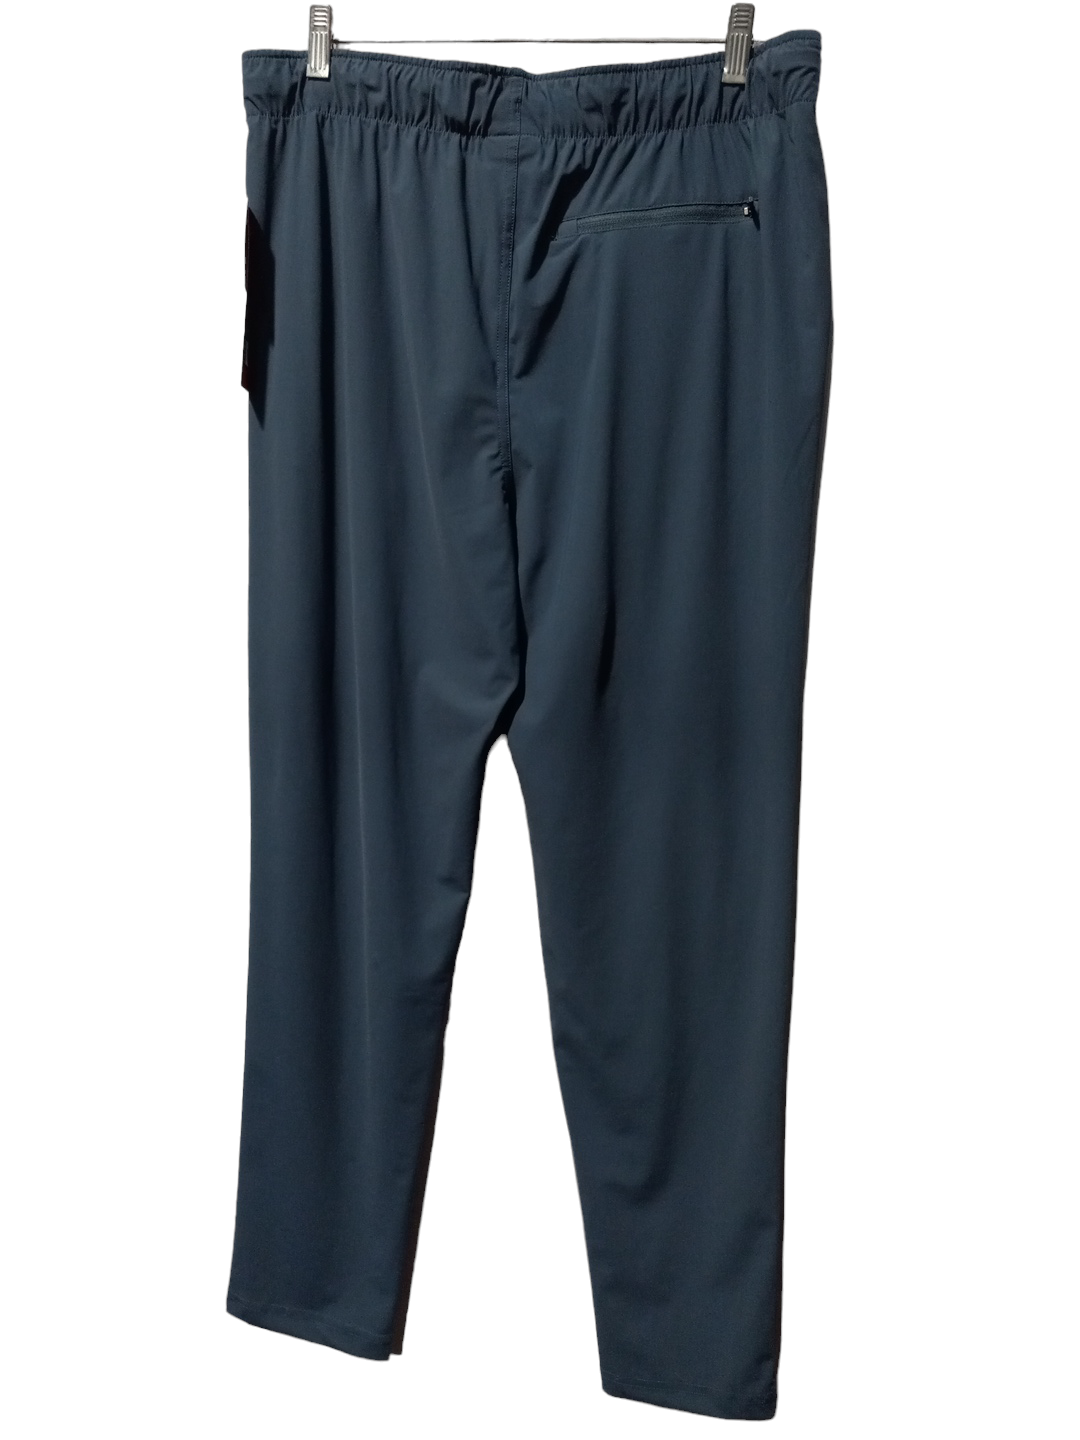 Blue Athletic Pants Clothes Mentor, Size M